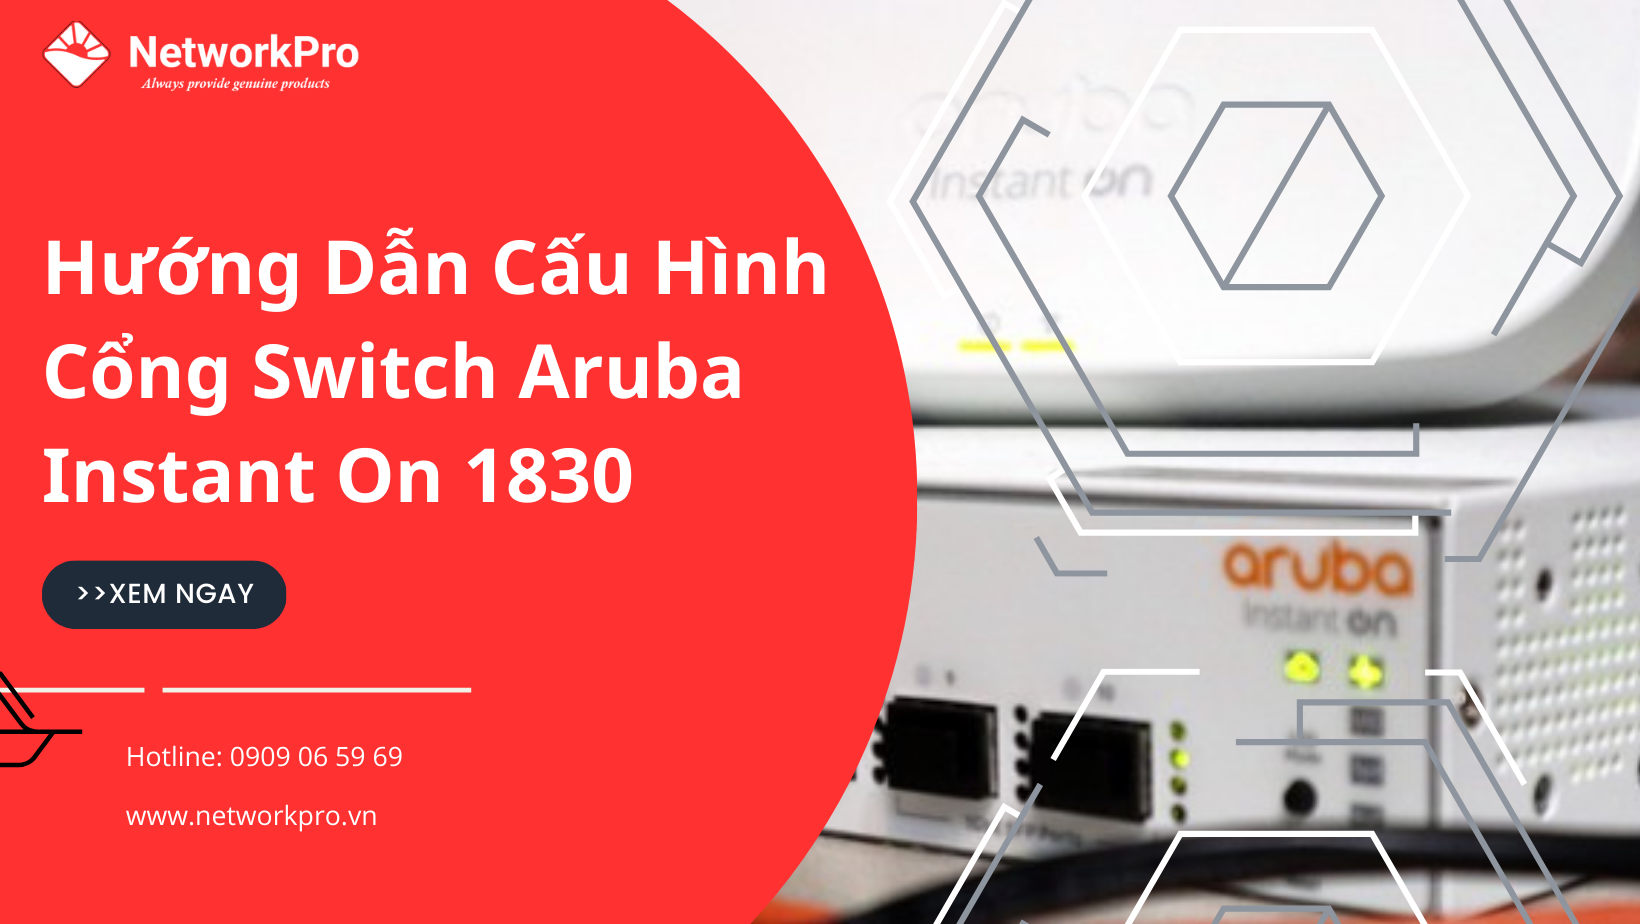 Hướng dẫn cấu hình cổng Aruba Instant On 1830 Switch